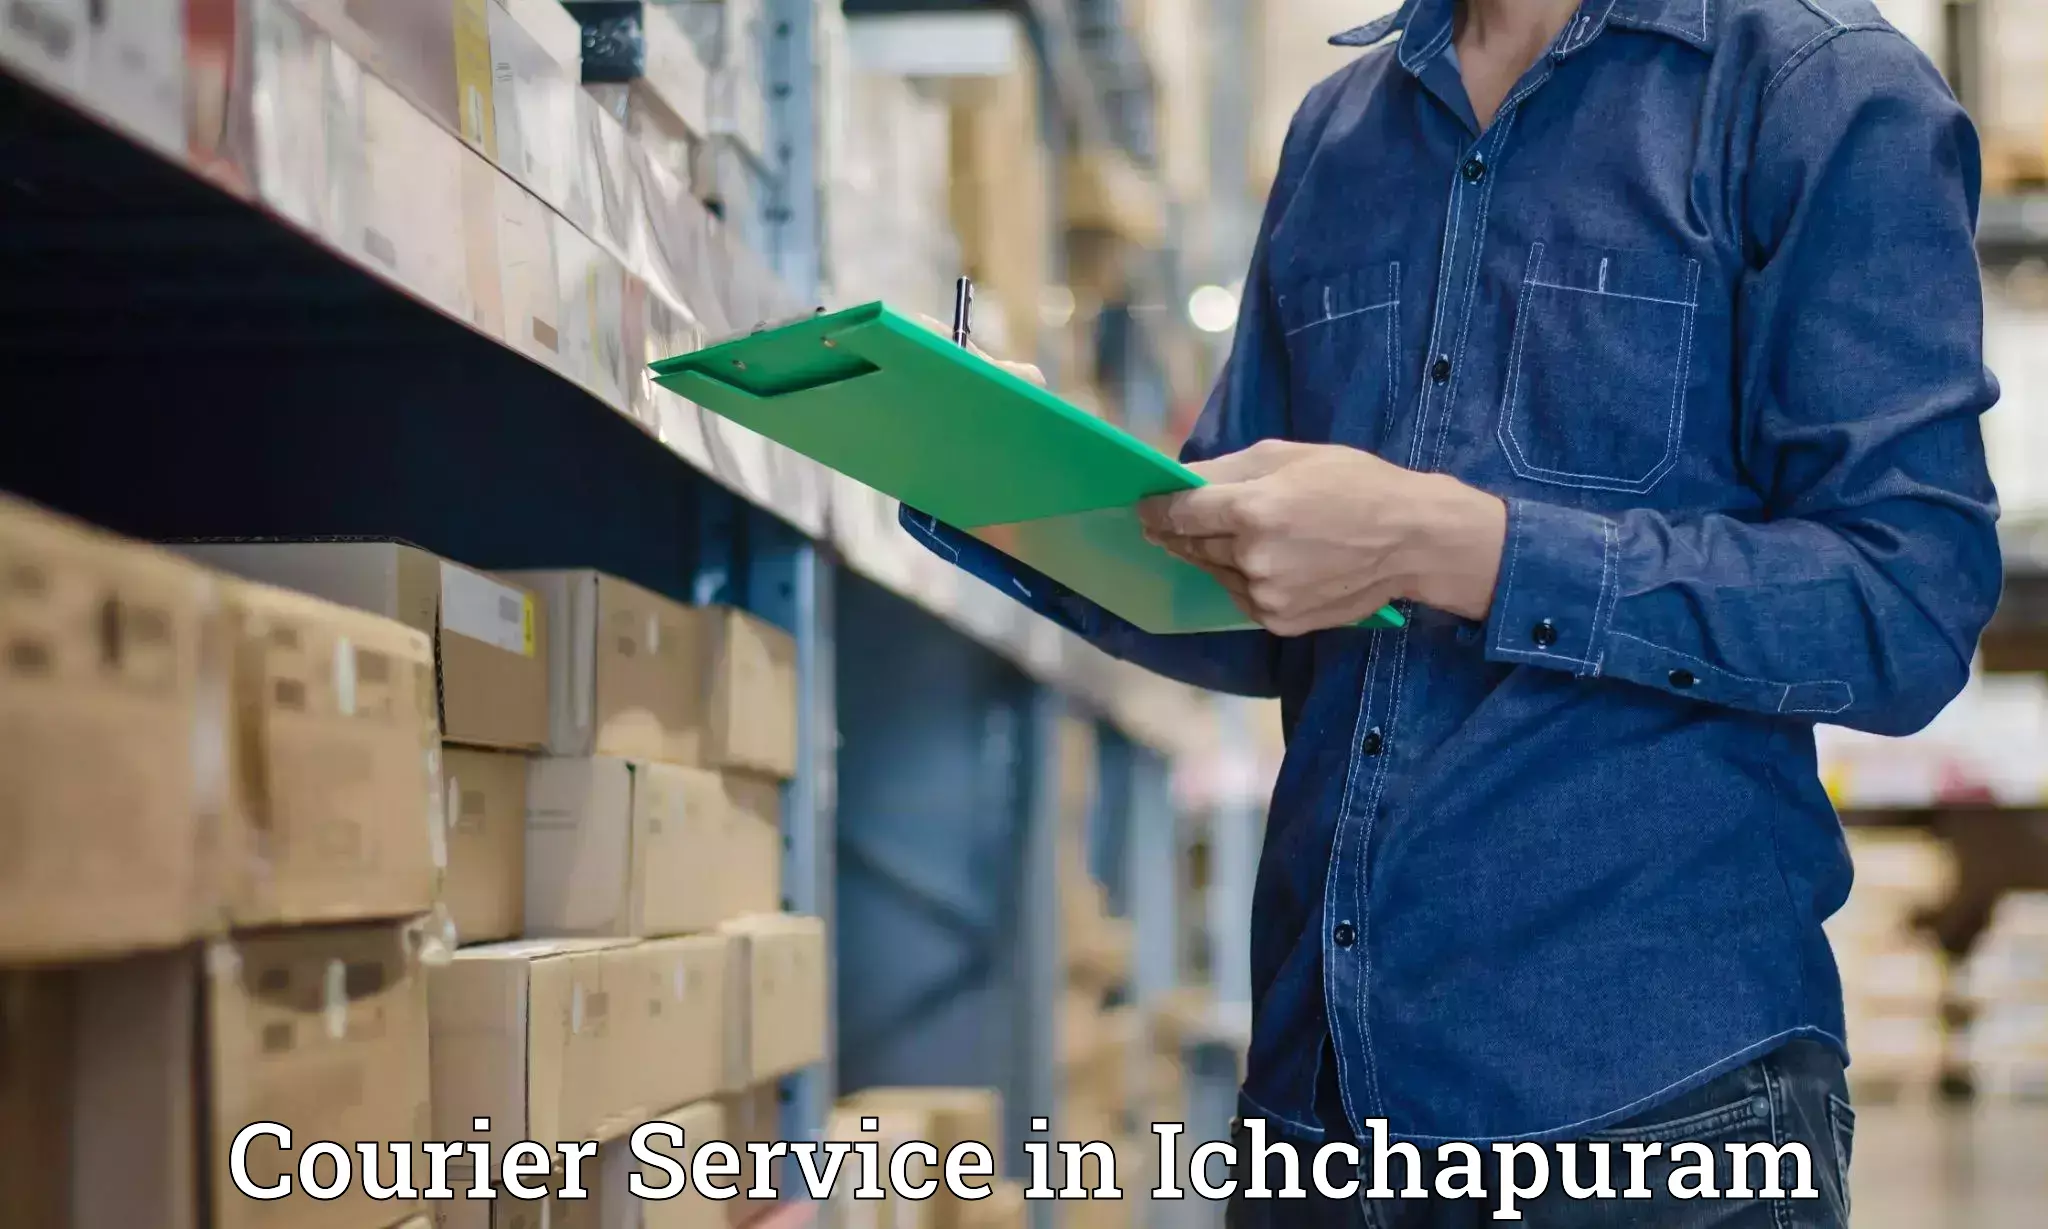 Cargo delivery service in Ichchapuram